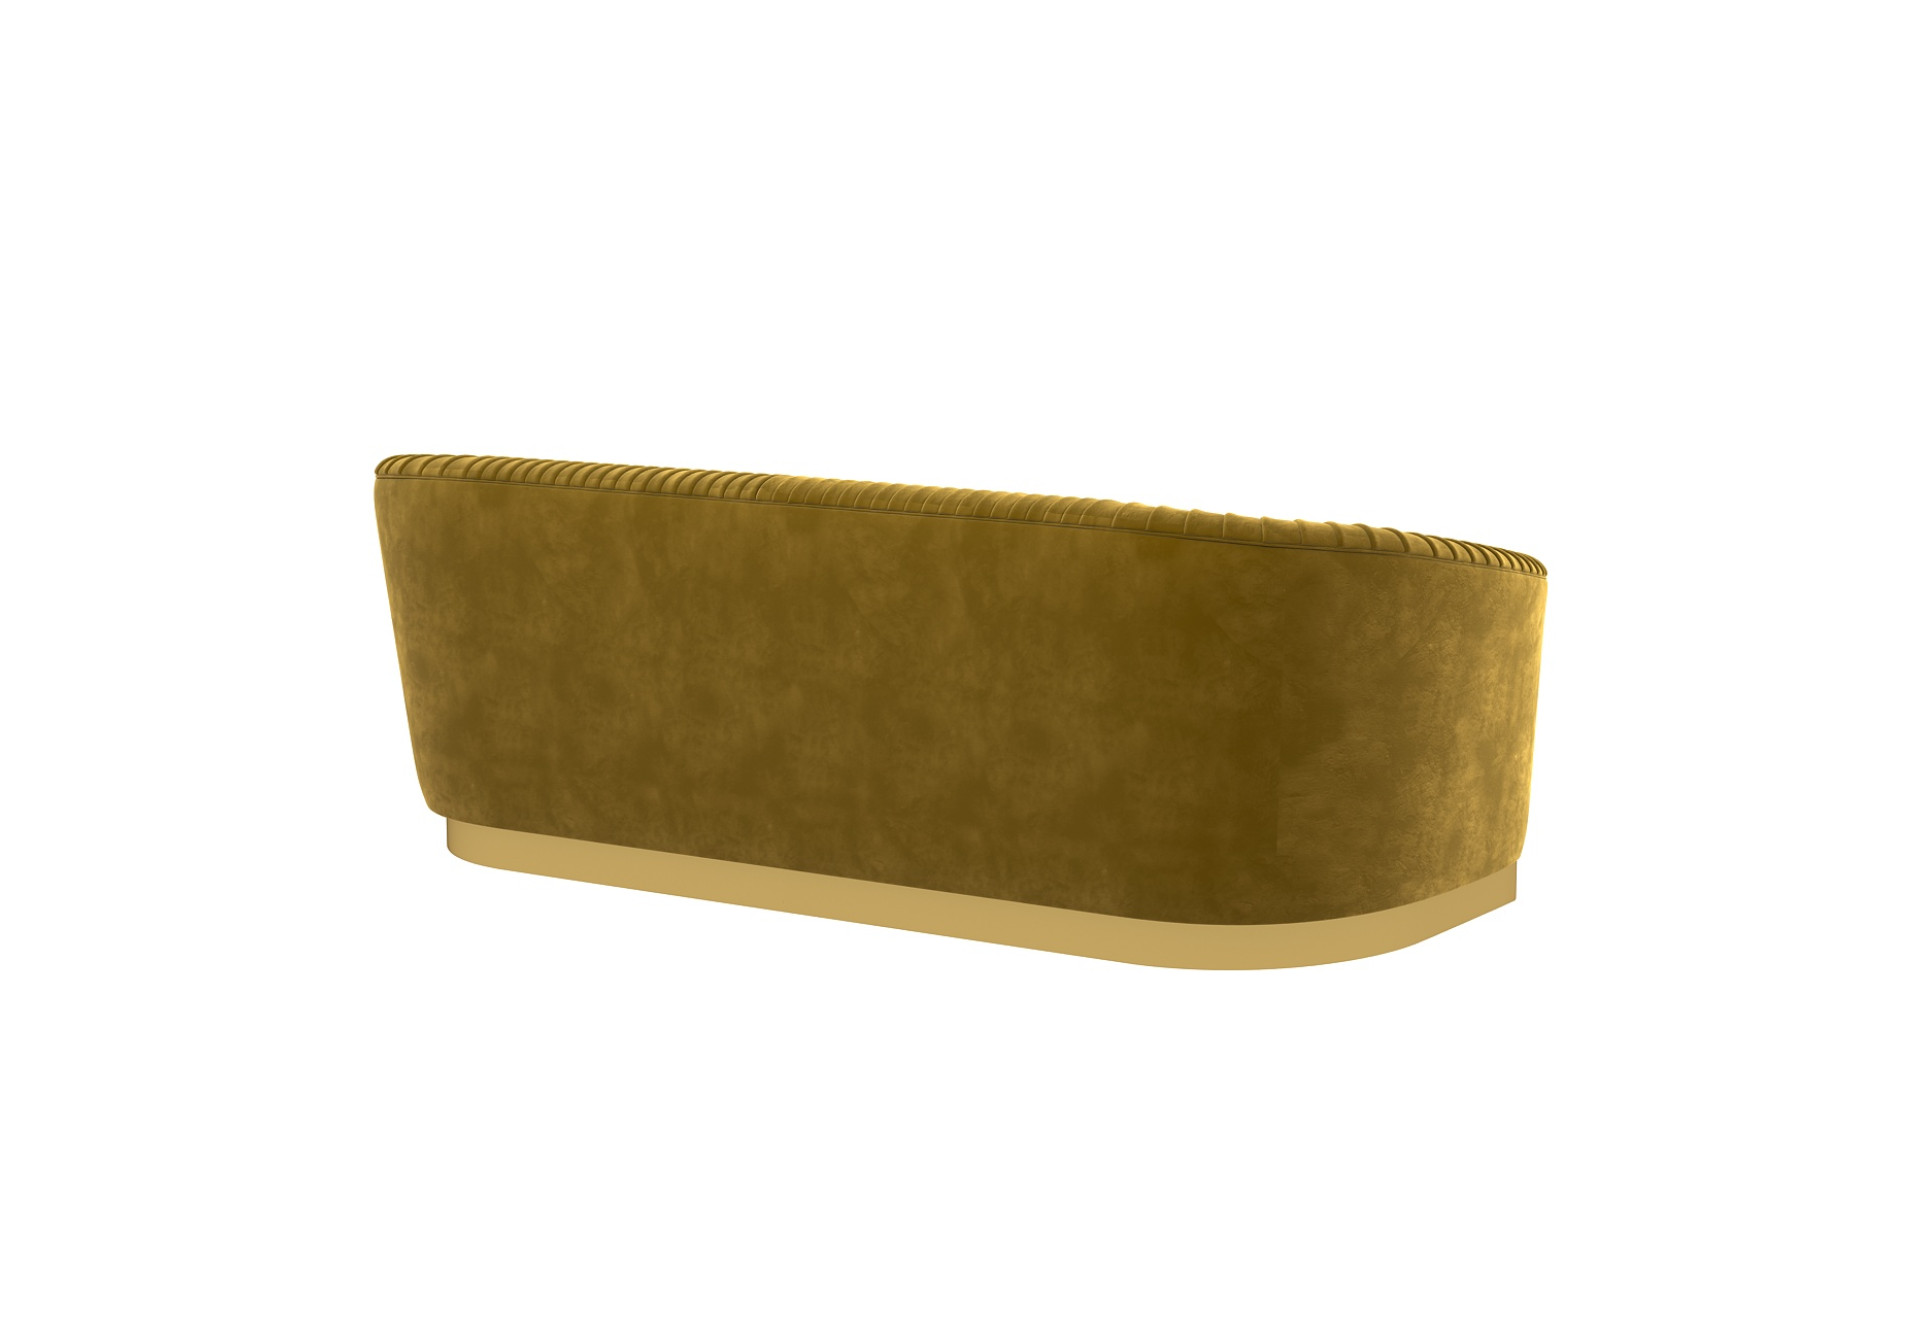 Roy 3 Seater Fabric Sofa (Velvet, Amber Gold)